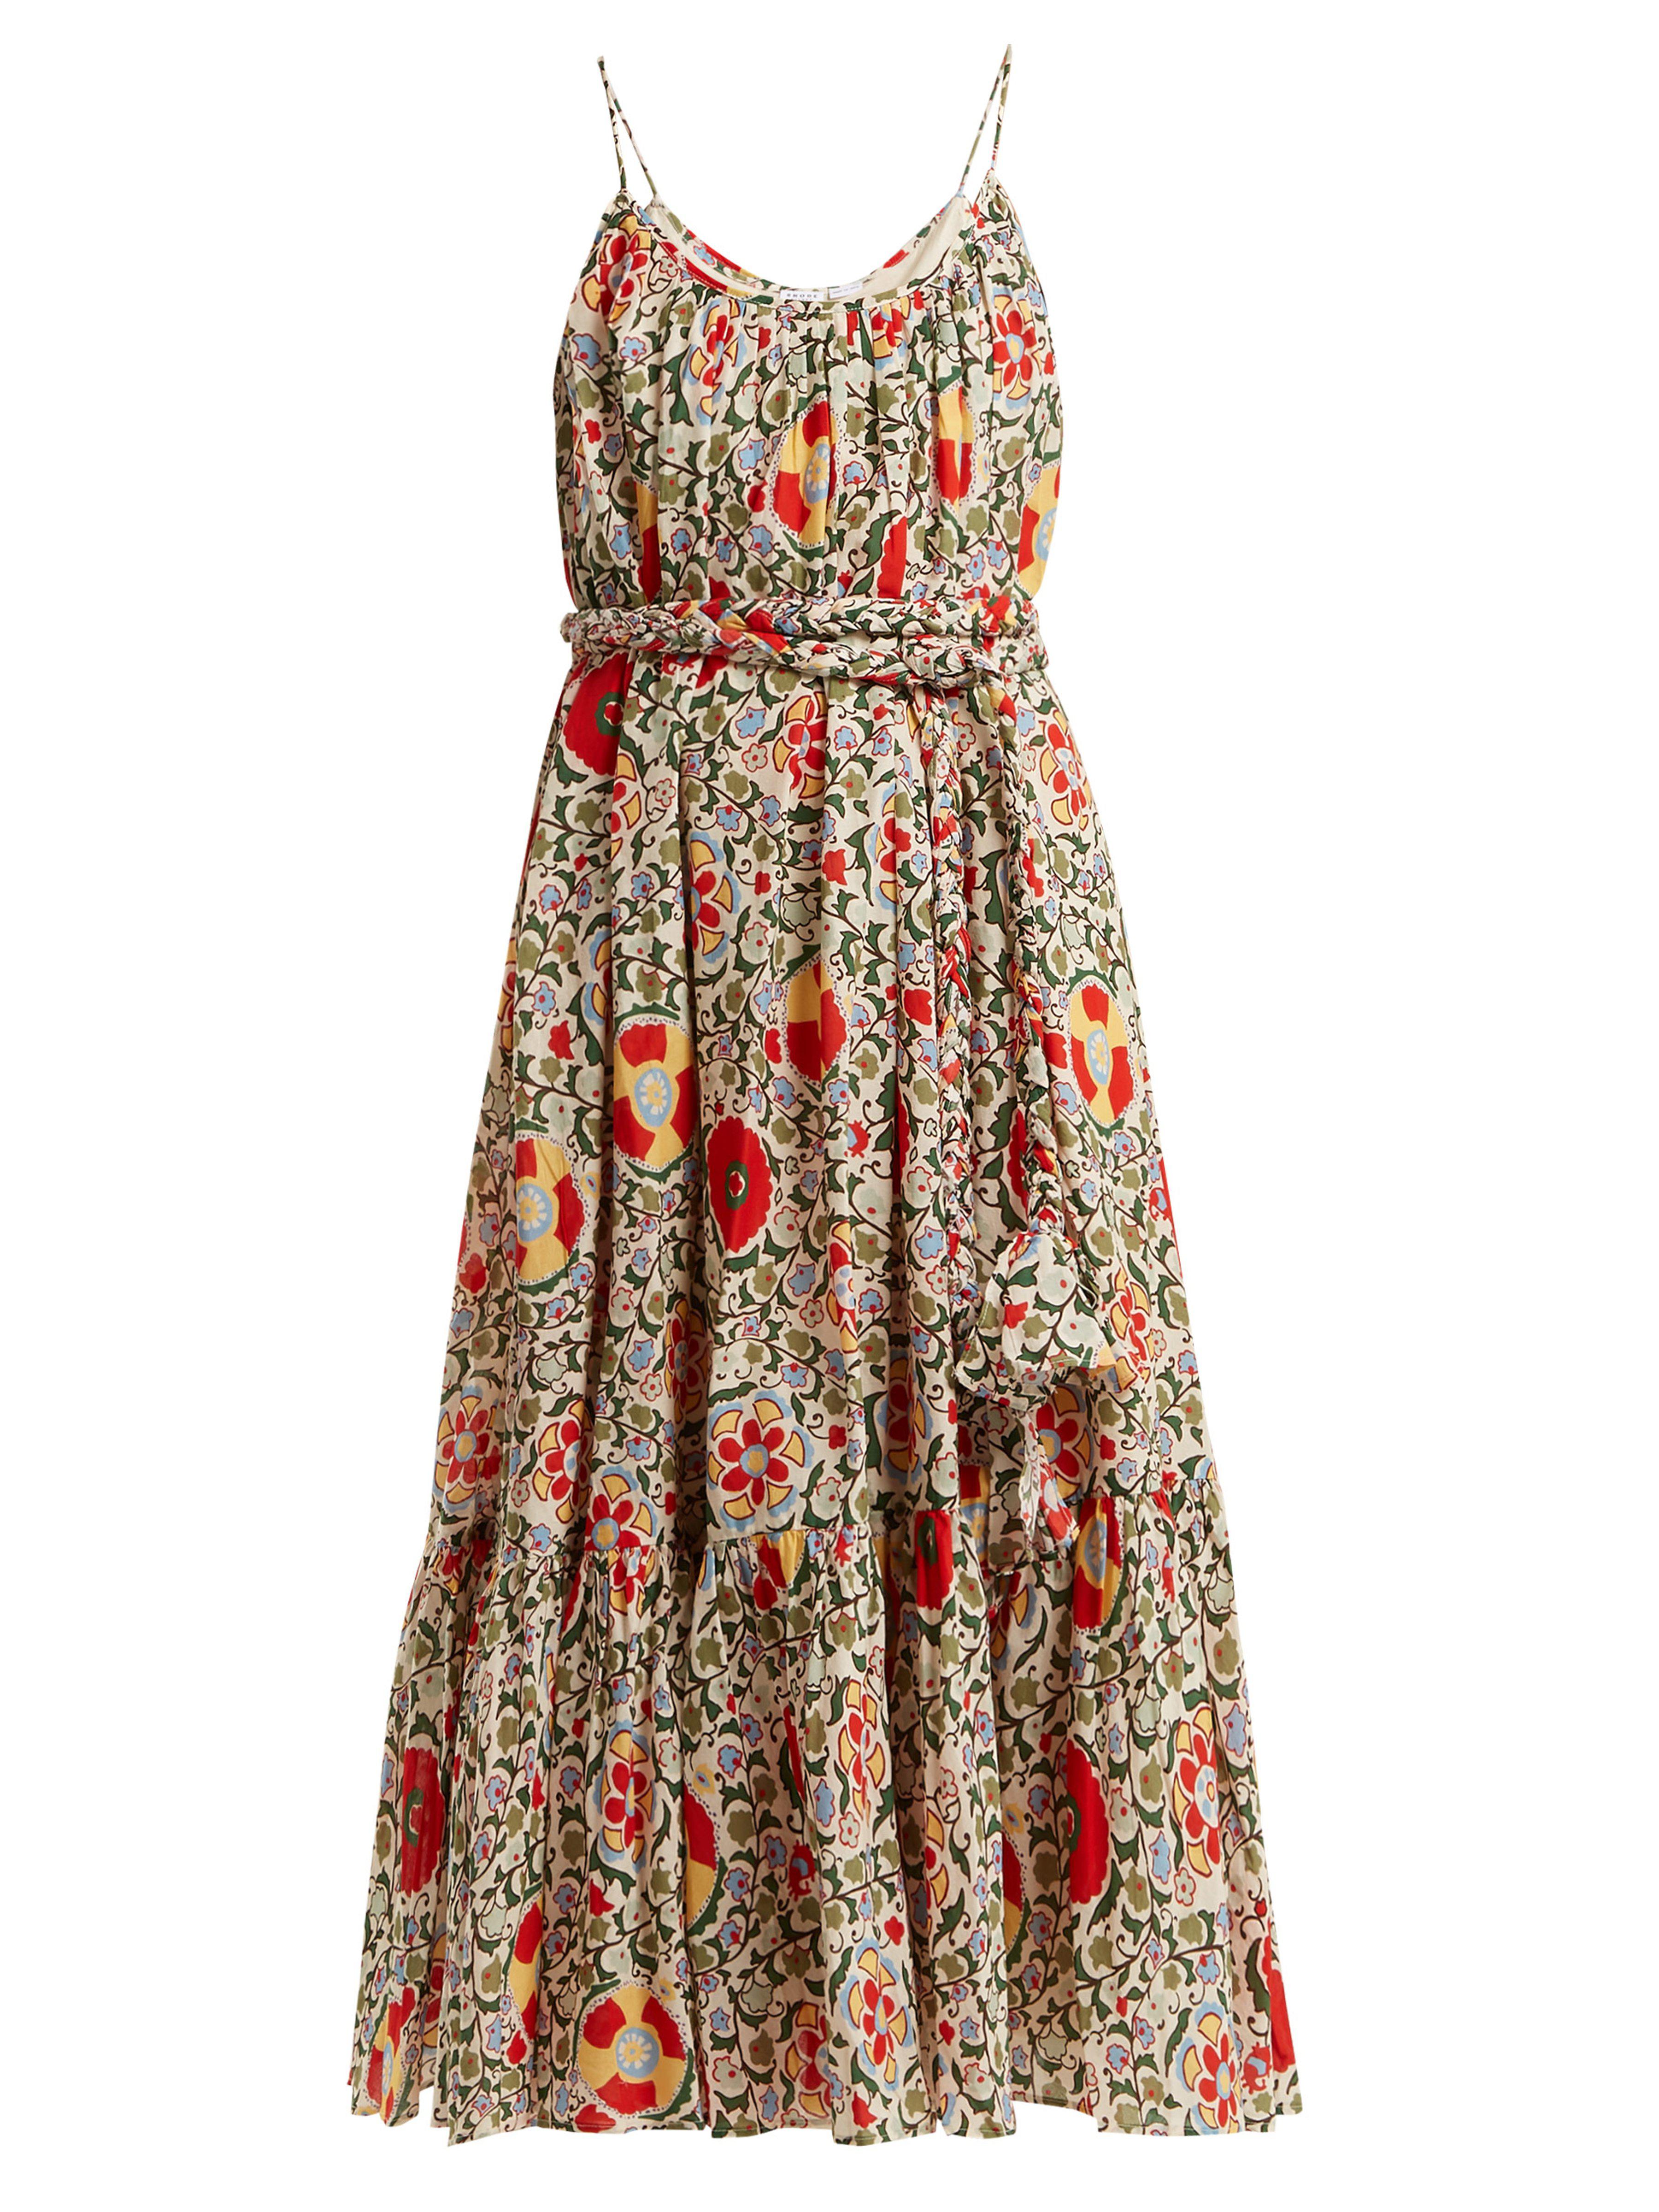 RHODE Lea Floral Print Cotton Dress - Lyst